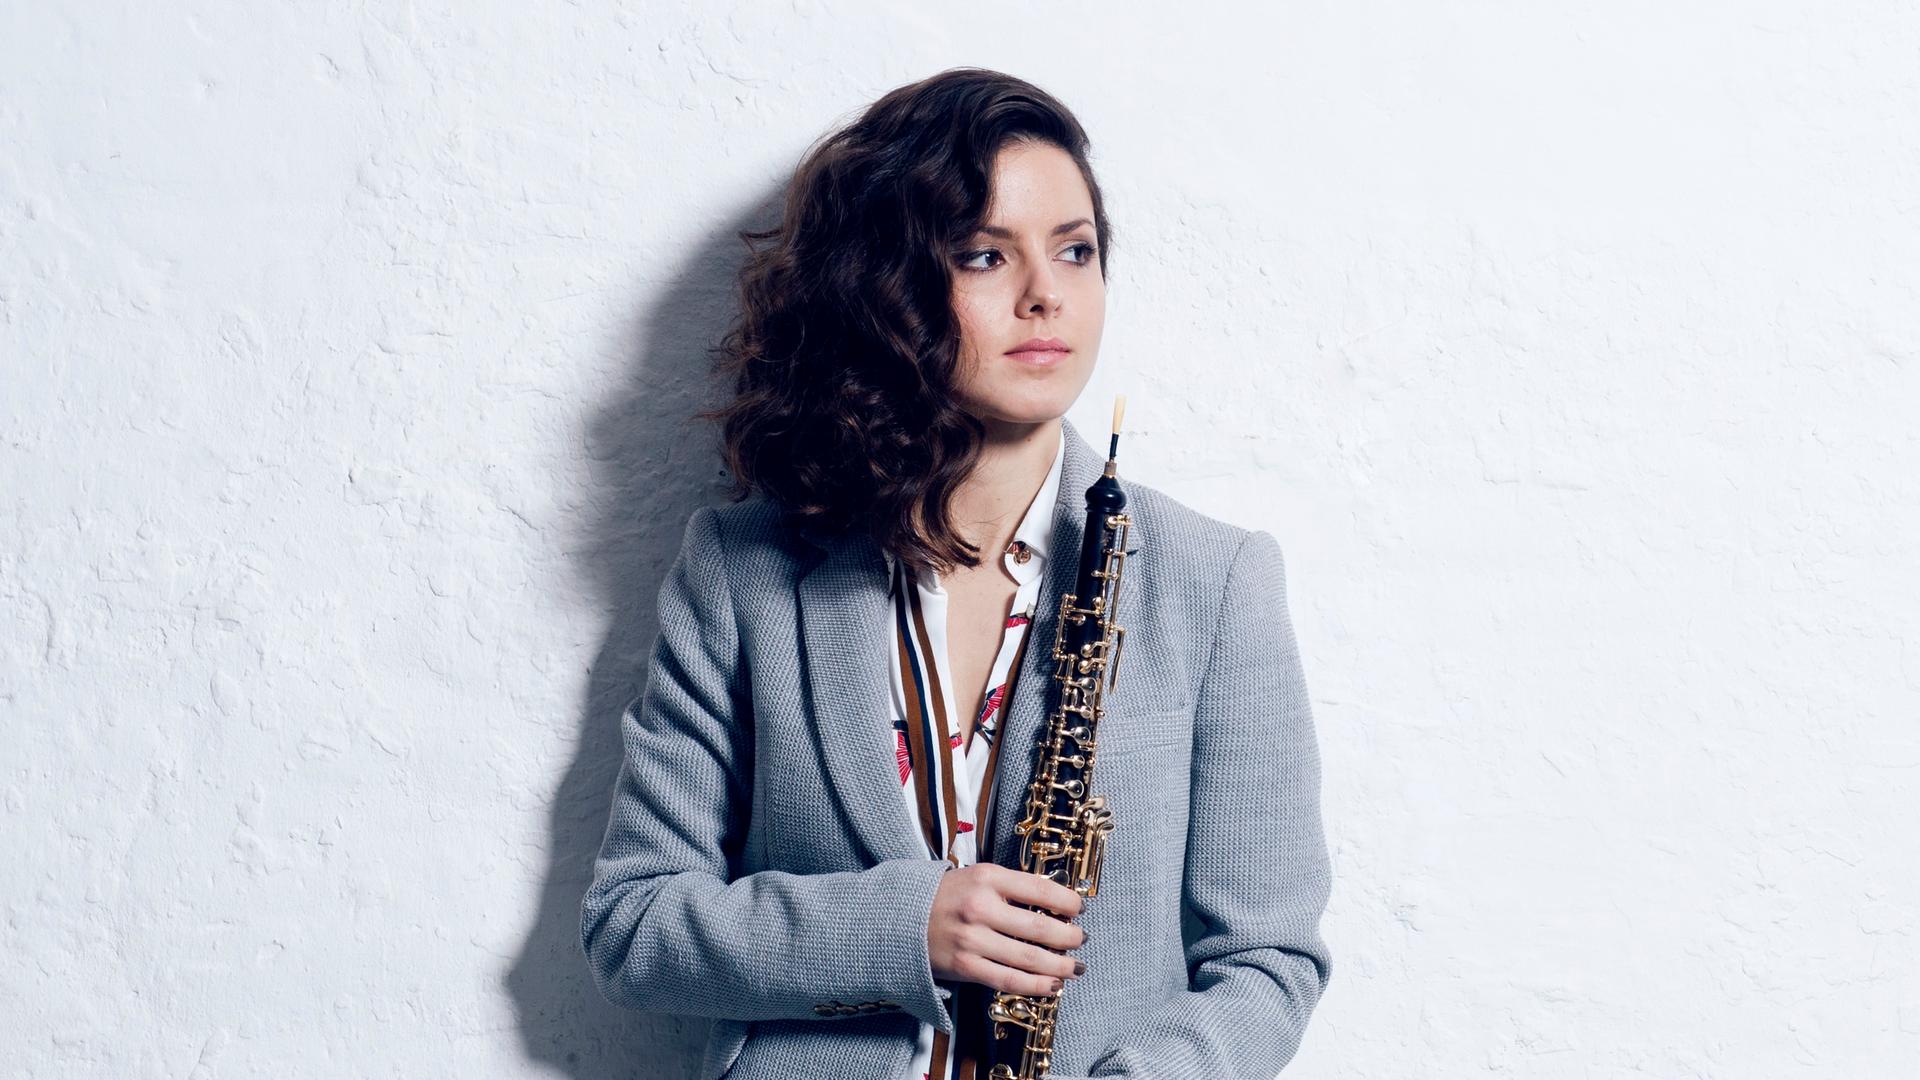 Cristina Gómez Godoy im Anzug steht mit langen, lockigen, offenen Haaren an einer Wand angeleht, blickt zur Seite und hält ihre Oboe umarmt vor sich.